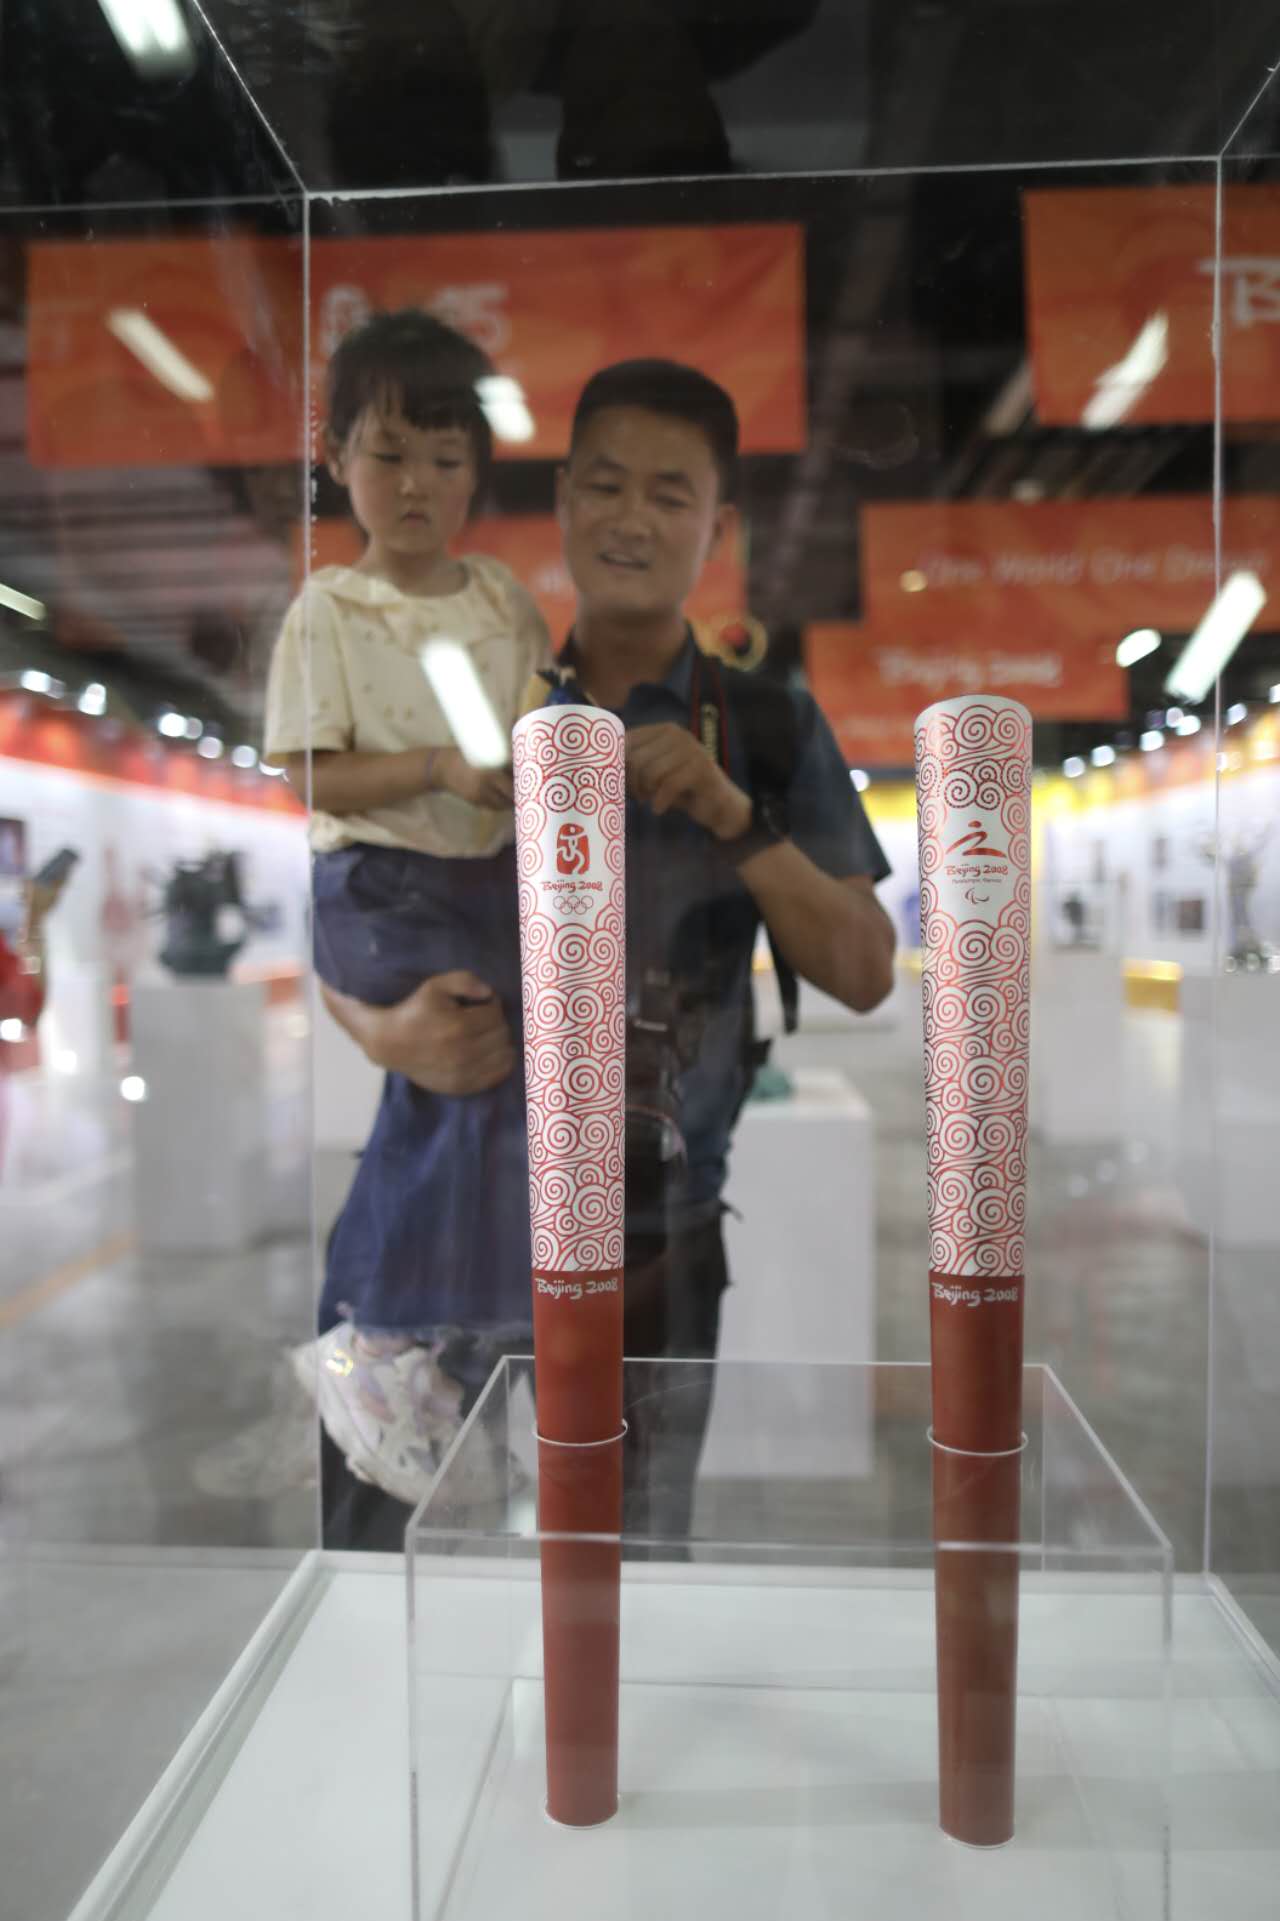 家長給小朋友介紹北京2008年奧運會和殘奧會火炬。新京報記者 浦峰 攝